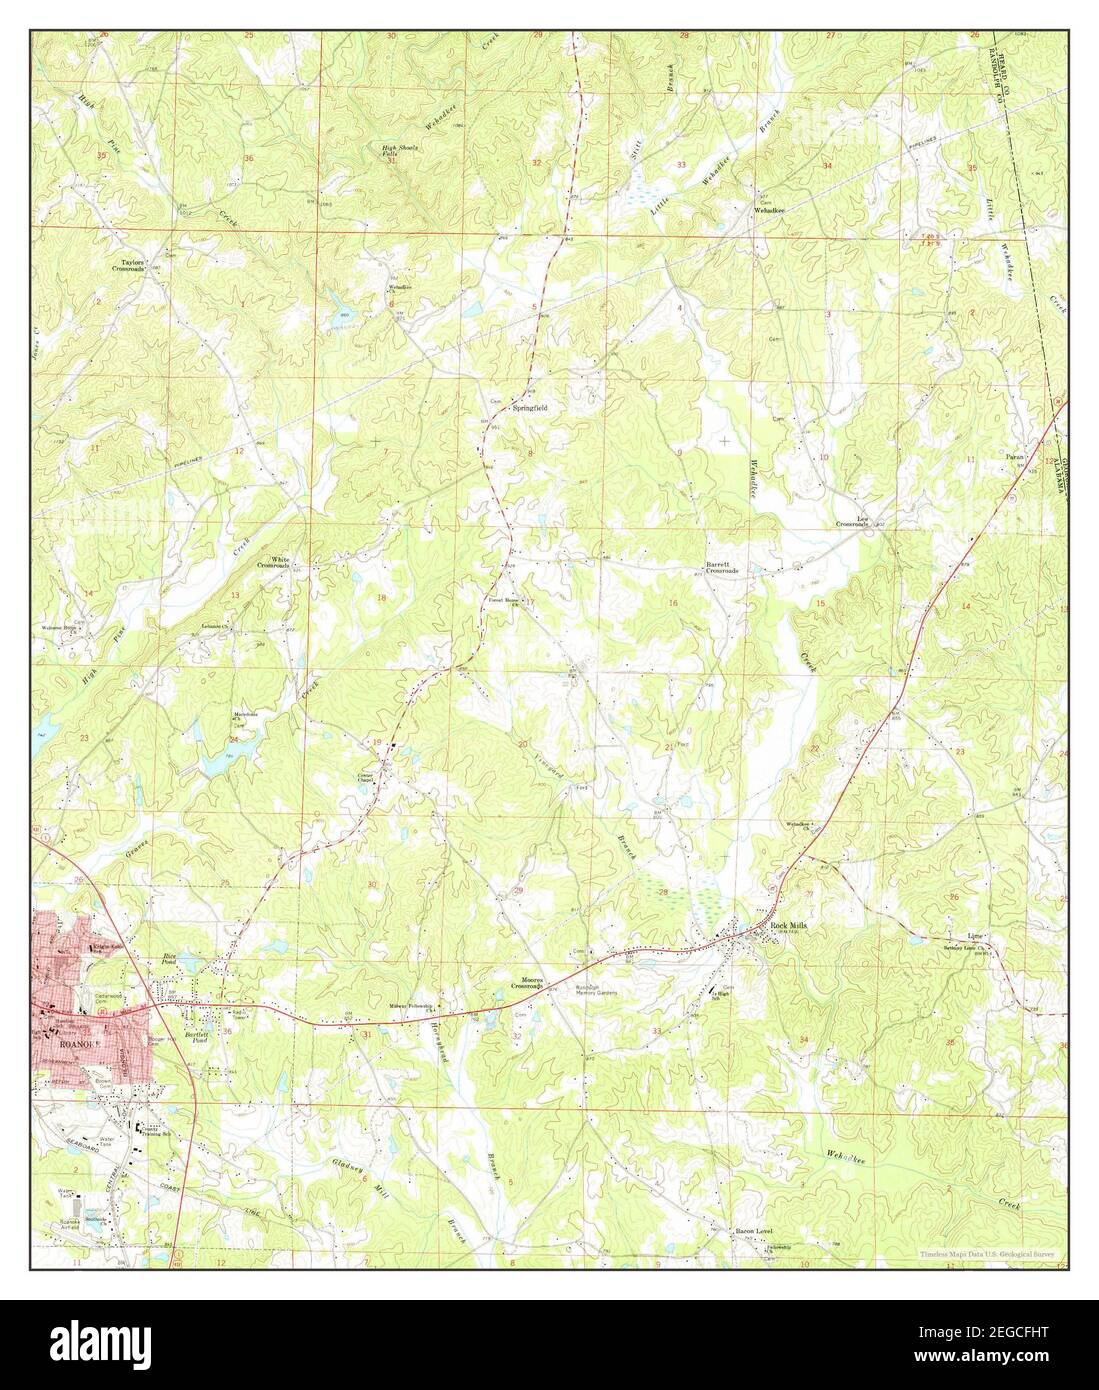 Roanoke East, Alabama, carte 1969, 1:24000, États-Unis d'Amérique par Timeless Maps, données U.S. Geological Survey Banque D'Images